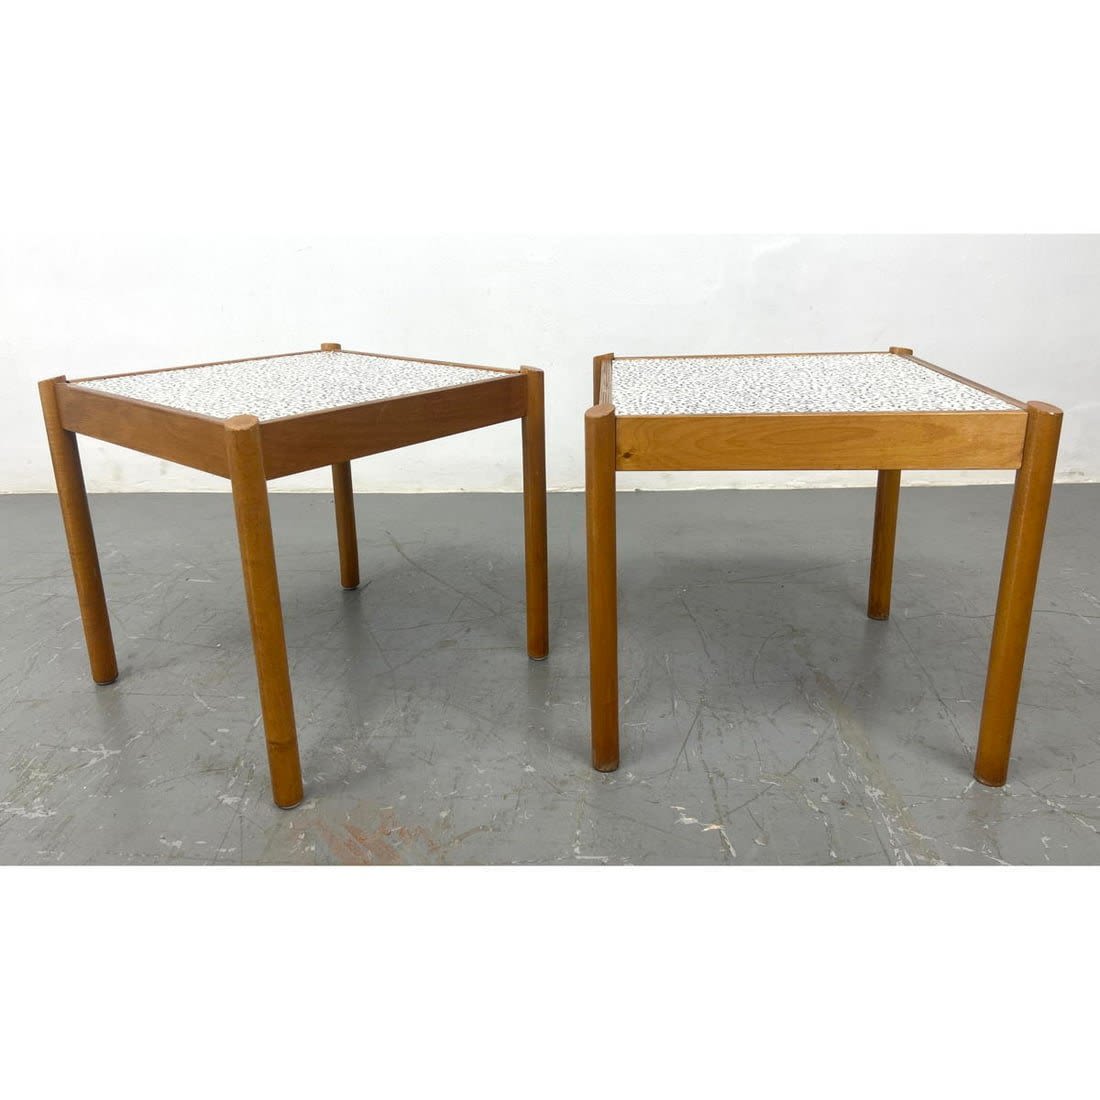 Pr Wood Frame Side Tables. Each